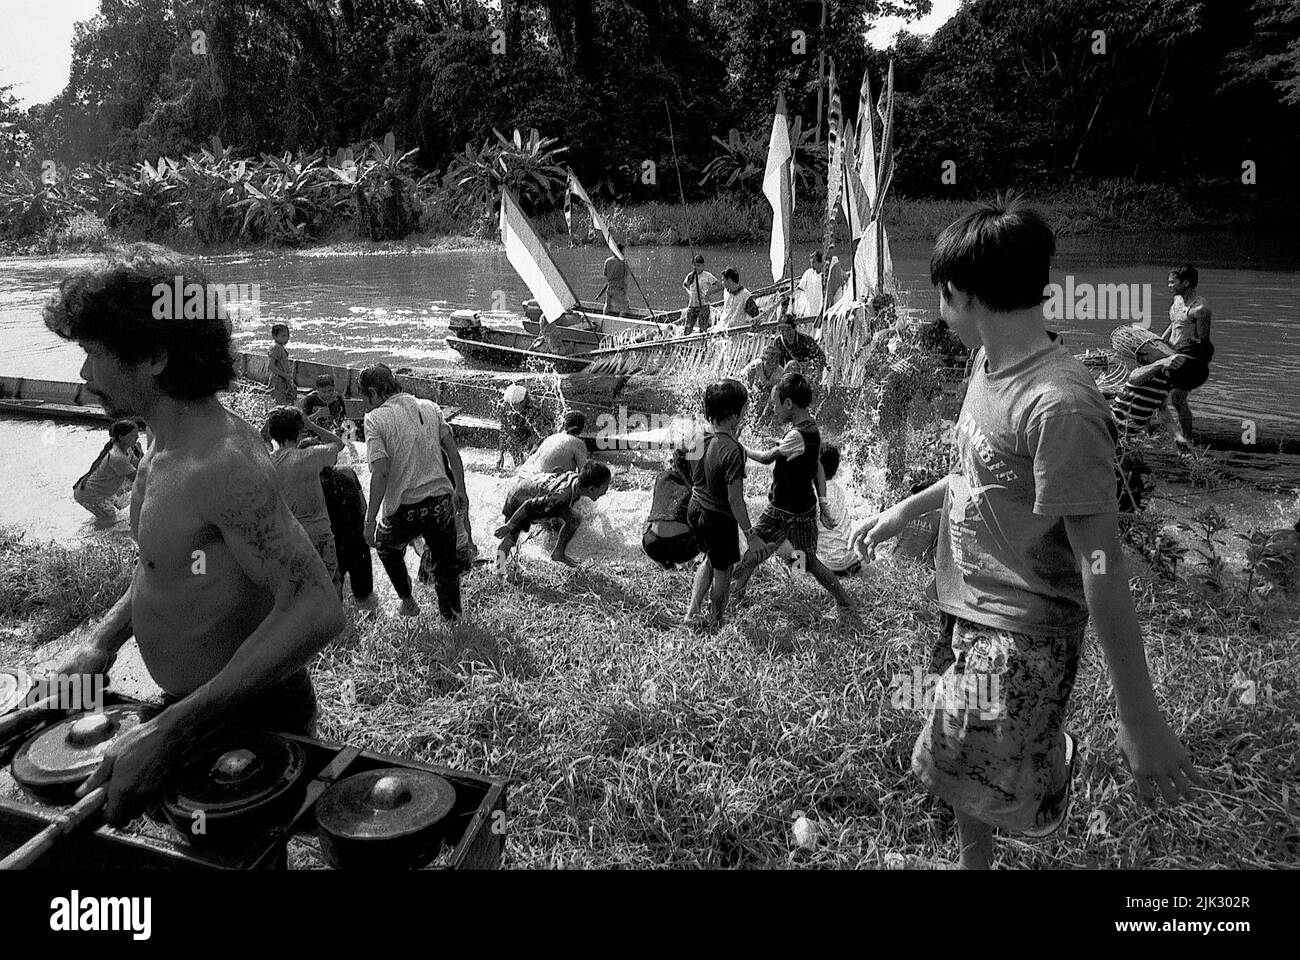 Kalimantan occidentale, Indonesia. Marzo 2007. Un uomo scarica una serie di strumenti a percussione gamelan, mentre cammina davanti a una folla di persone, la comunità Dayak Tamambaloh, che si spruzzano acqua l'uno contro l'altro come atto purificante, di fronte a una barca che ha appena portato la famiglia del loro nuovo capo tradizionale per una visita al luogo di sepoltura del loro ex capo nel villaggio di Sungai Uluk Palin (Sungulo Palin), Putusibau Utara, Kapuas Hulu, Kalimantan occidentale, Indonesia. La cultura è una parte indispensabile di qualsiasi sviluppo, secondo le Nazioni Unite. Foto Stock